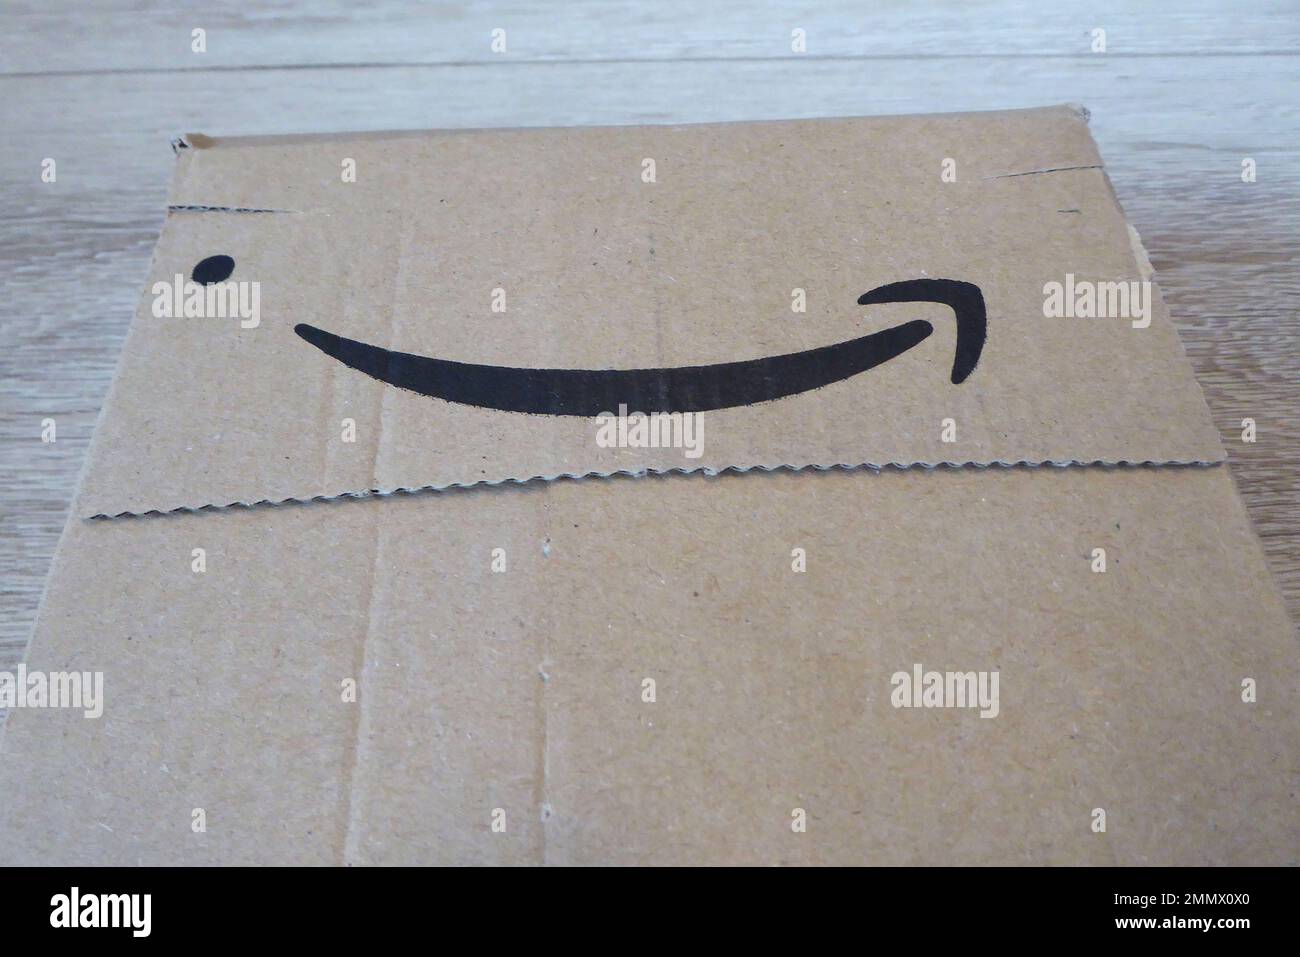 Amazon / Paket / Karton Foto Stock